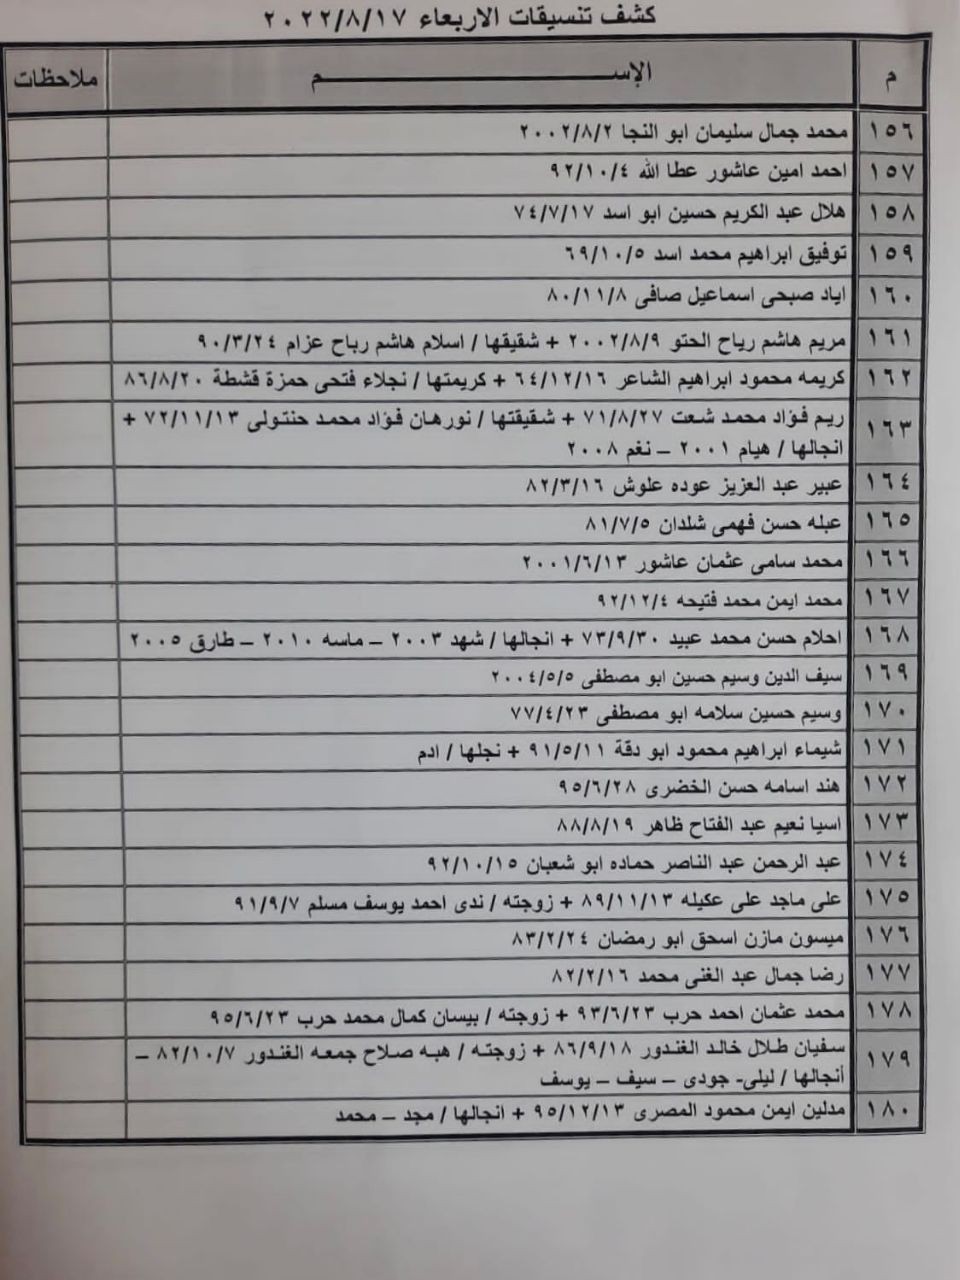 كشف "تنسيقات مصرية" للسفر عبر معبر رفح يوم الأربعاء 17 أغسطس 2022